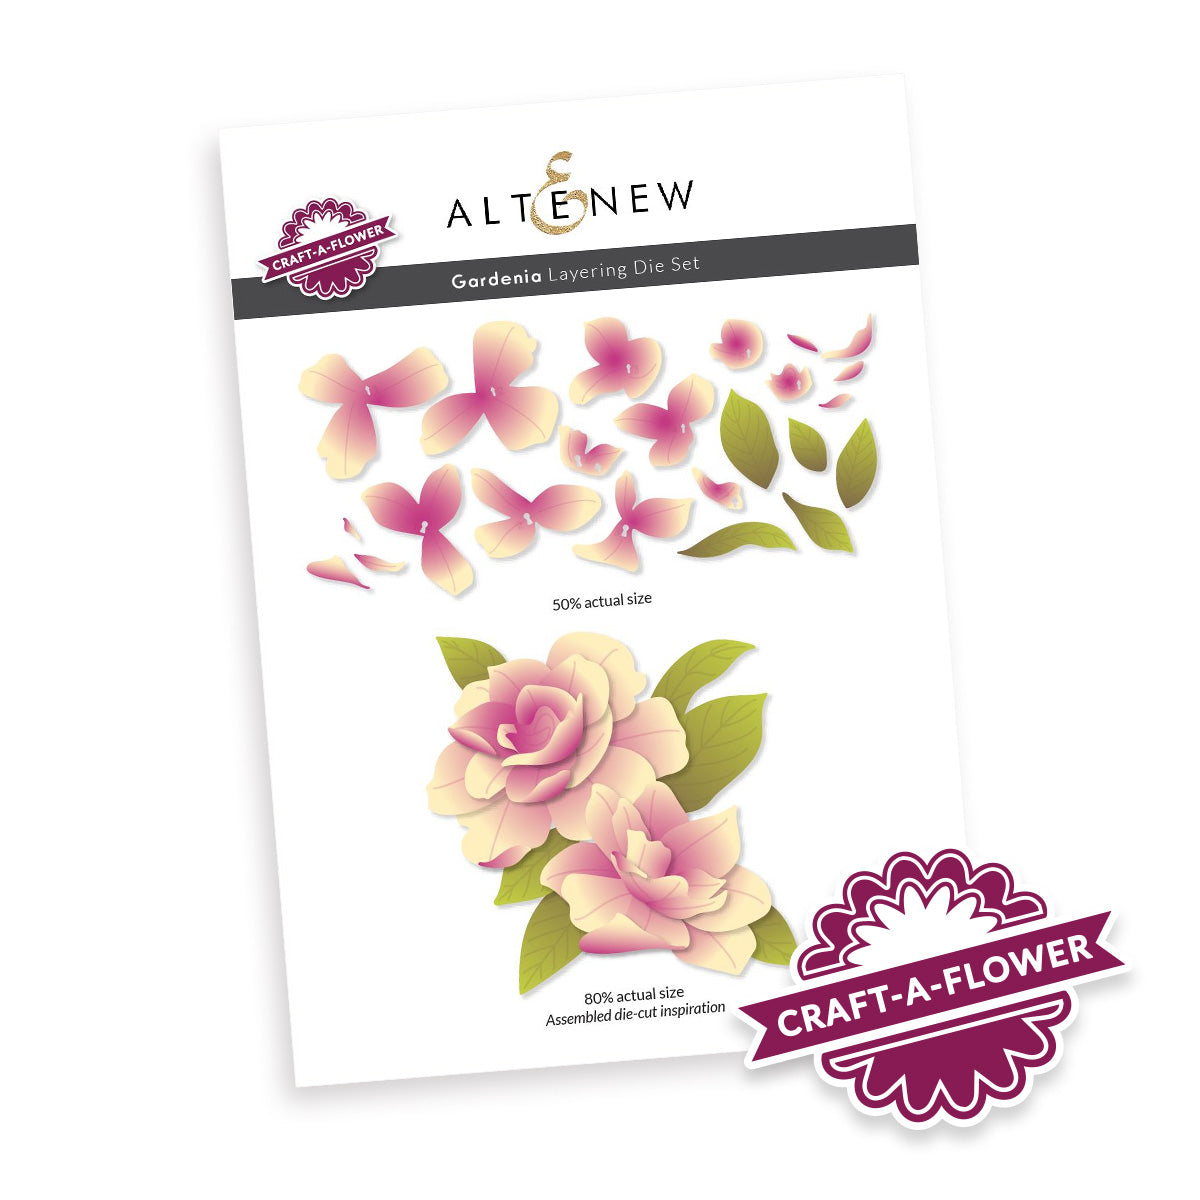 Altenew Craft-A-Flower: Gardenia Layering Die Set